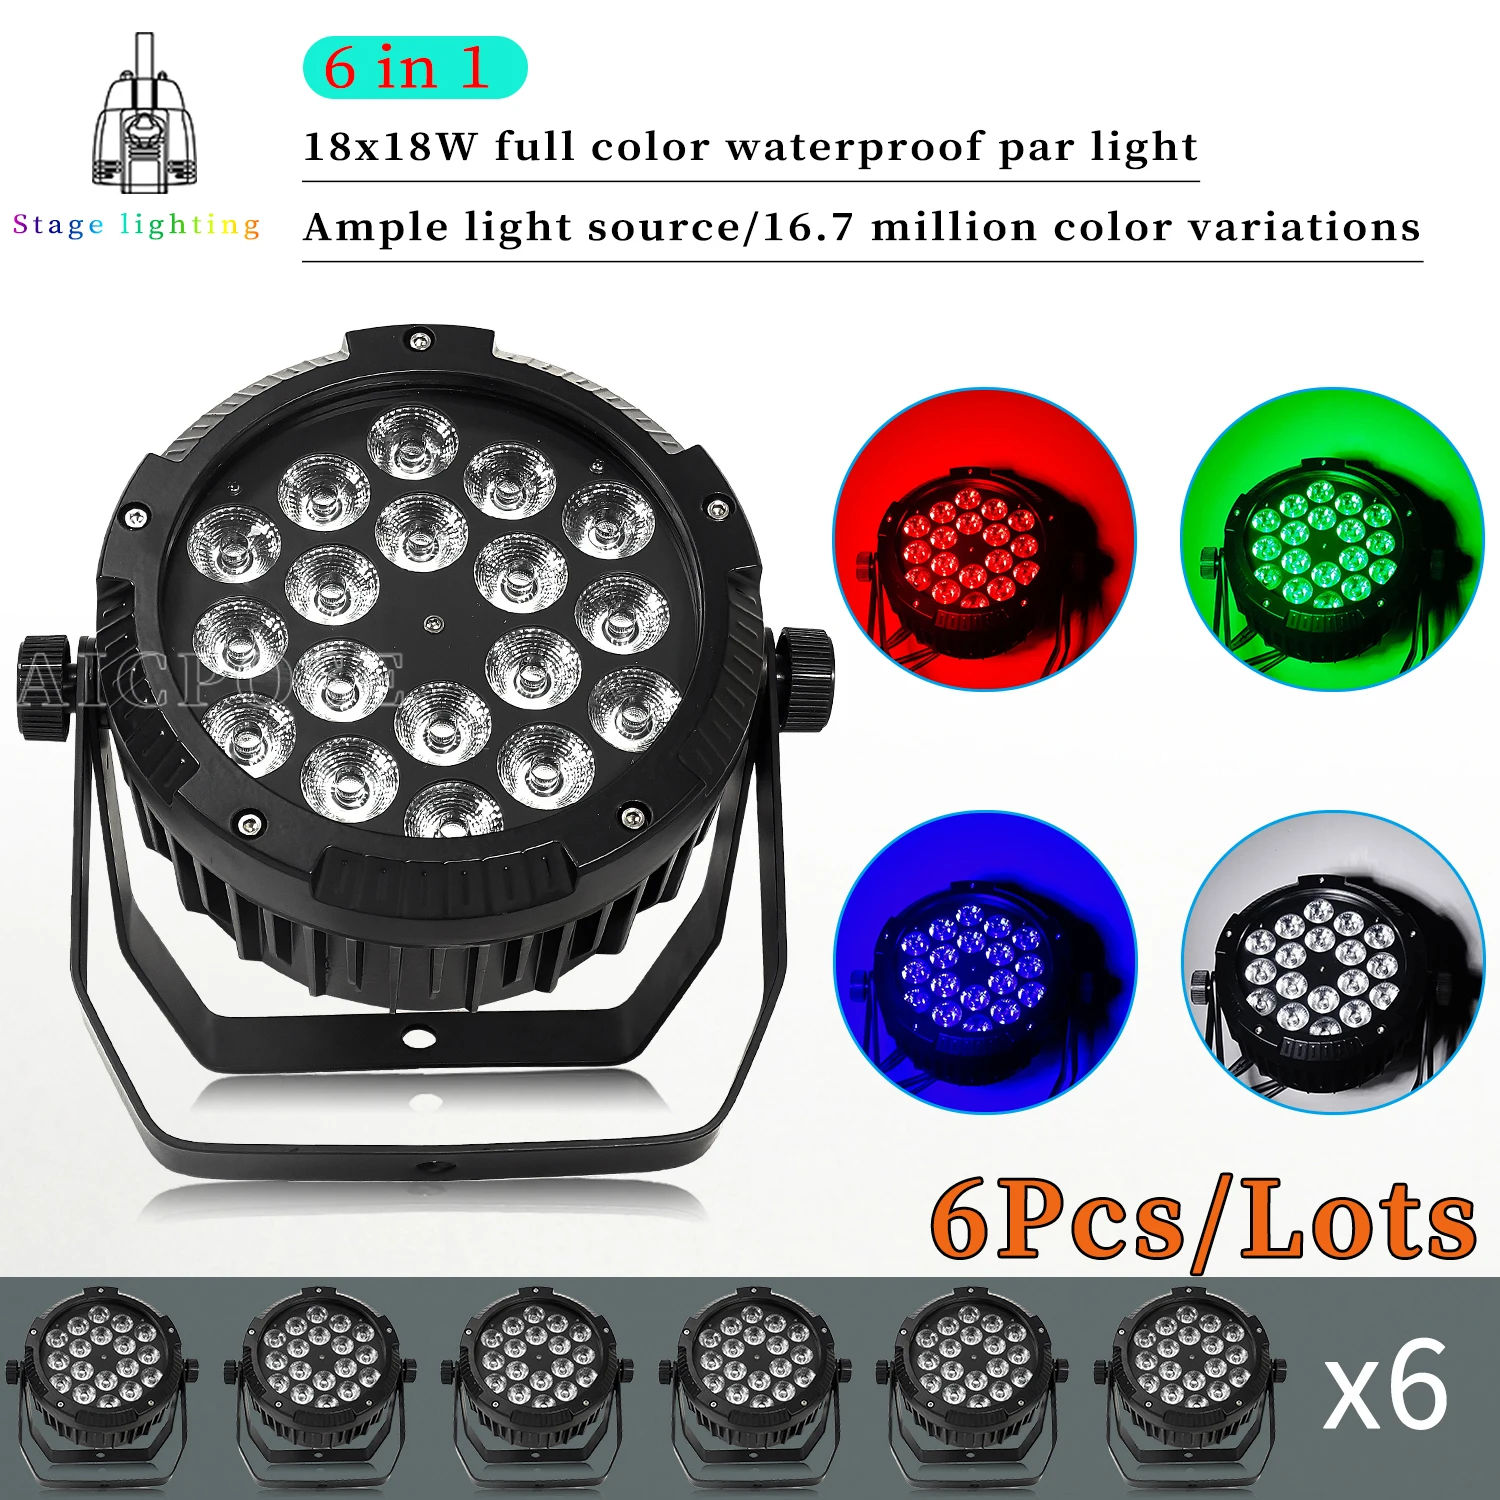 

6Pcs/Lots 18X12W RGBW 4in1 LED Par Light 18x18W RGBWA UV 6IN1 IP65 Waterproof Outdoor Flat Spotlight Stage DJ Disco Light